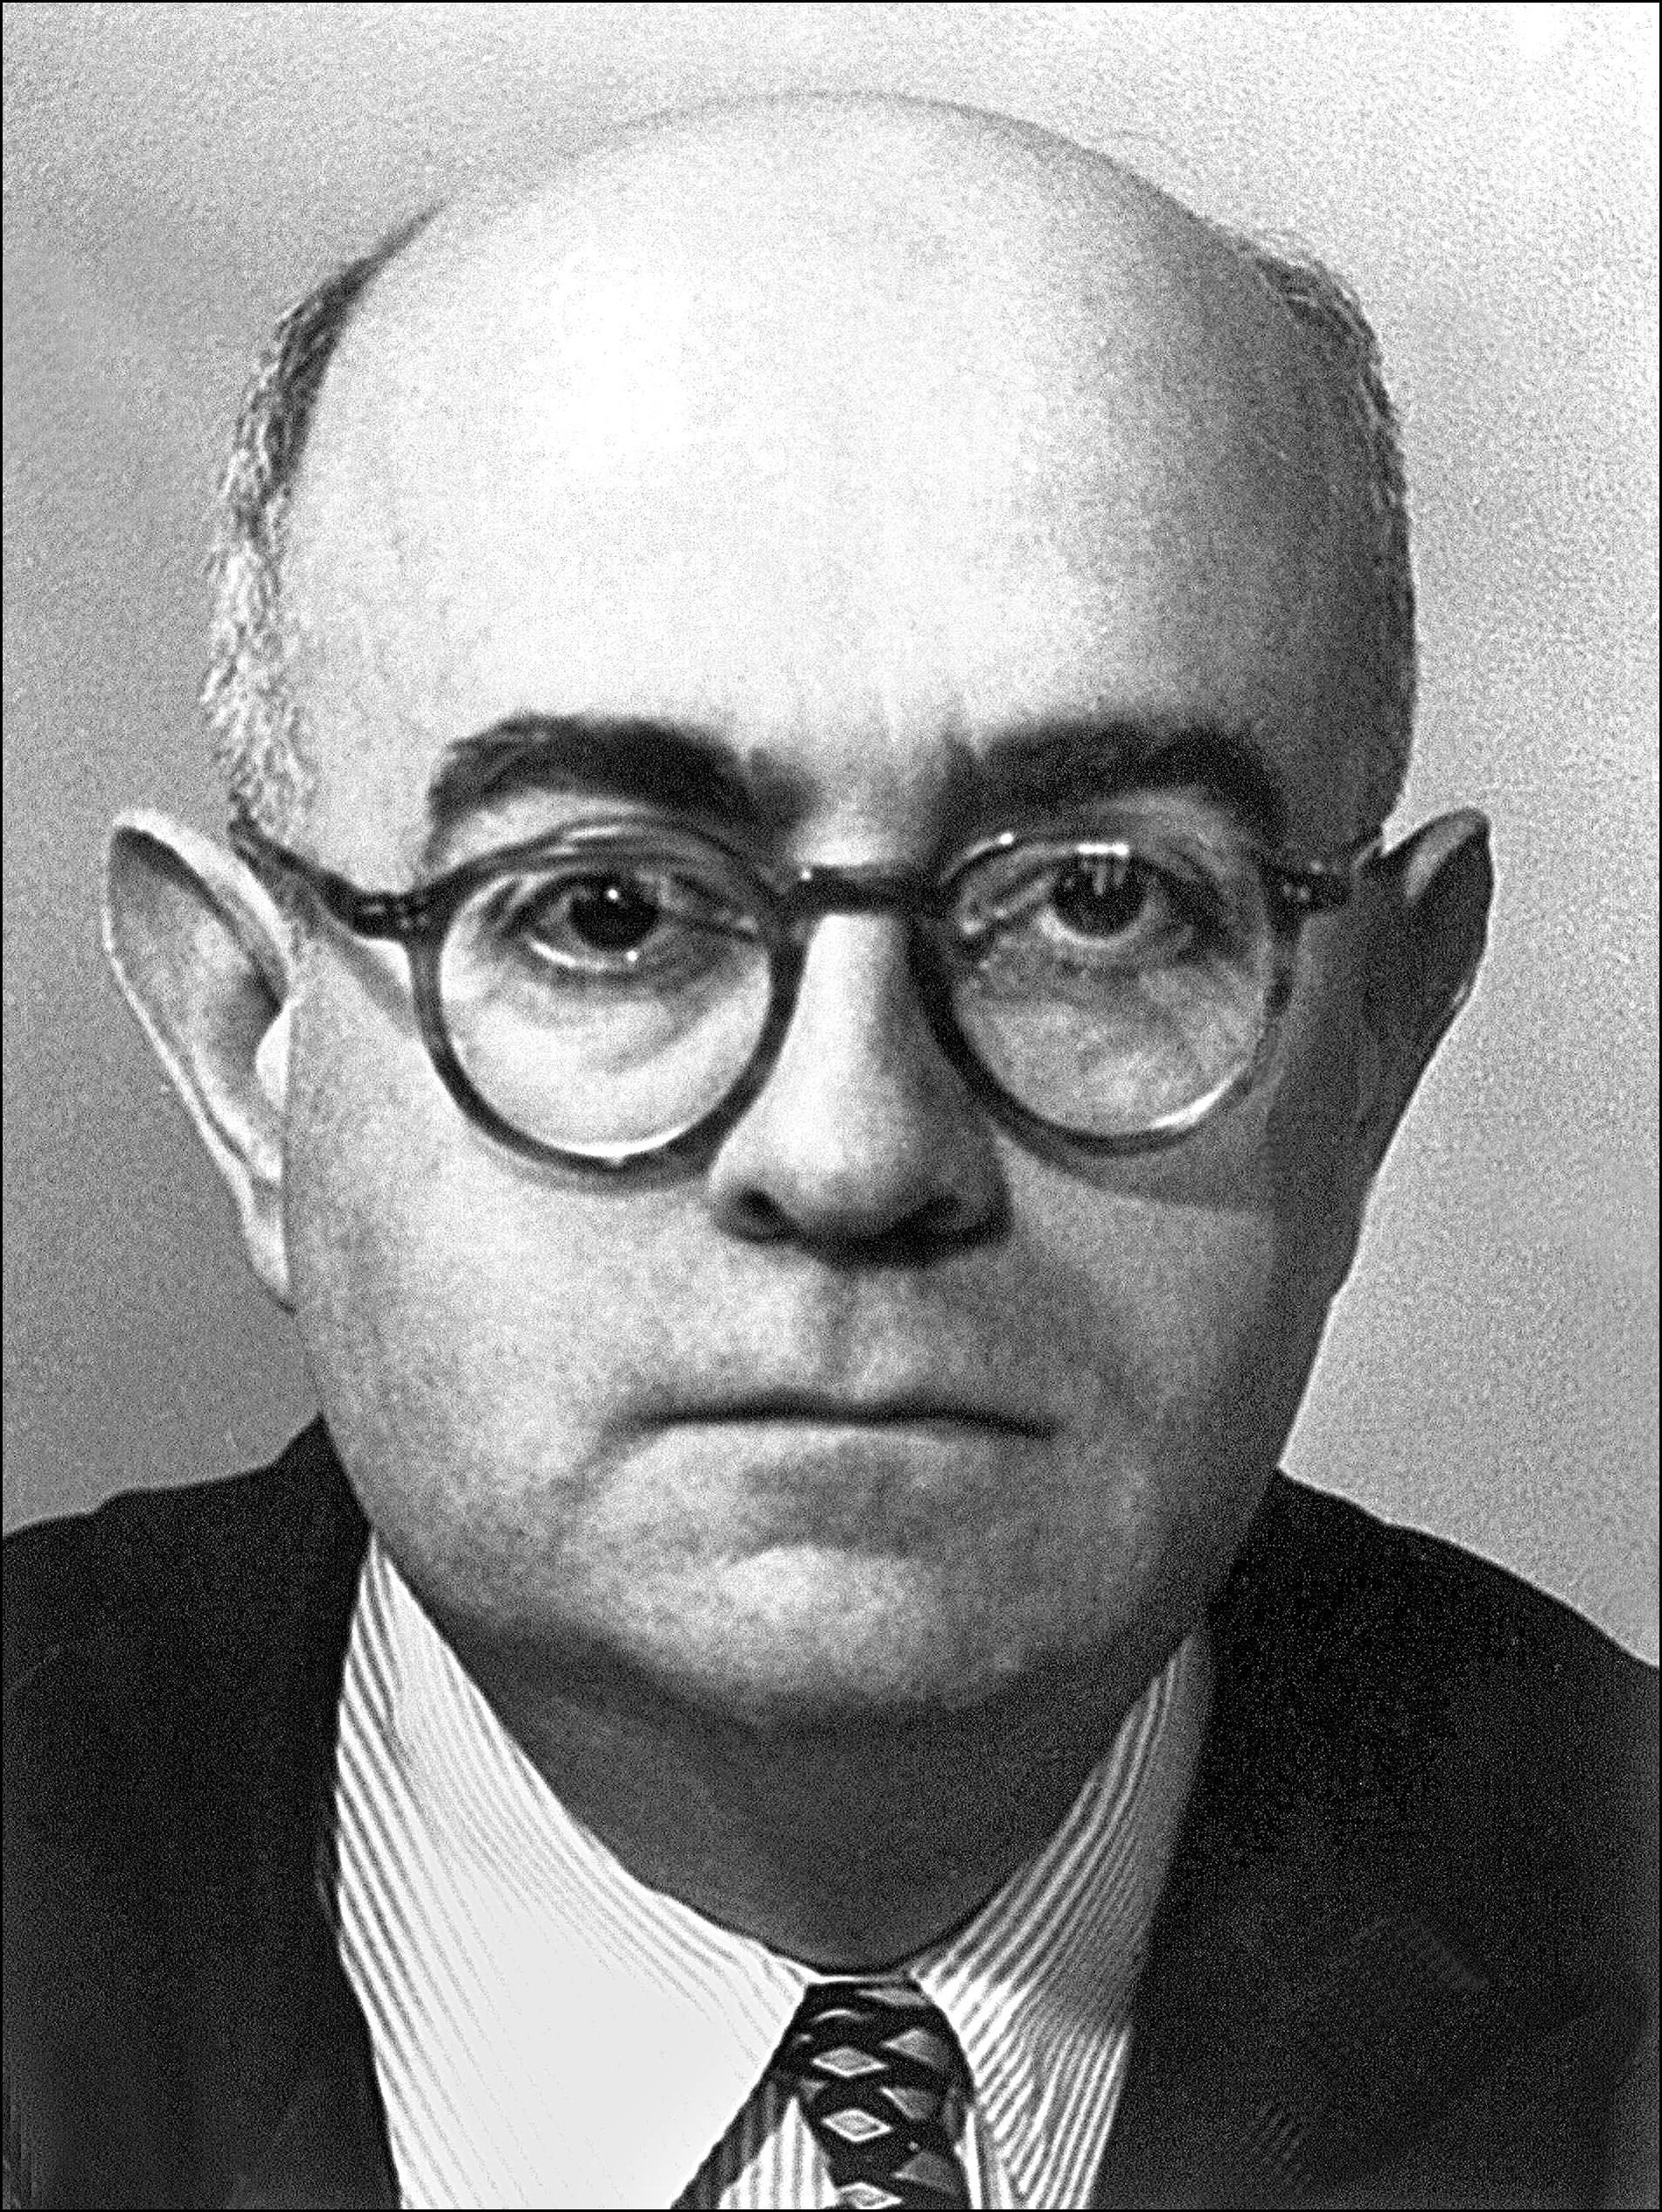 Theodor W Adorno, den mest kände av sociologerna i den s k ”Frankfurtskolan”